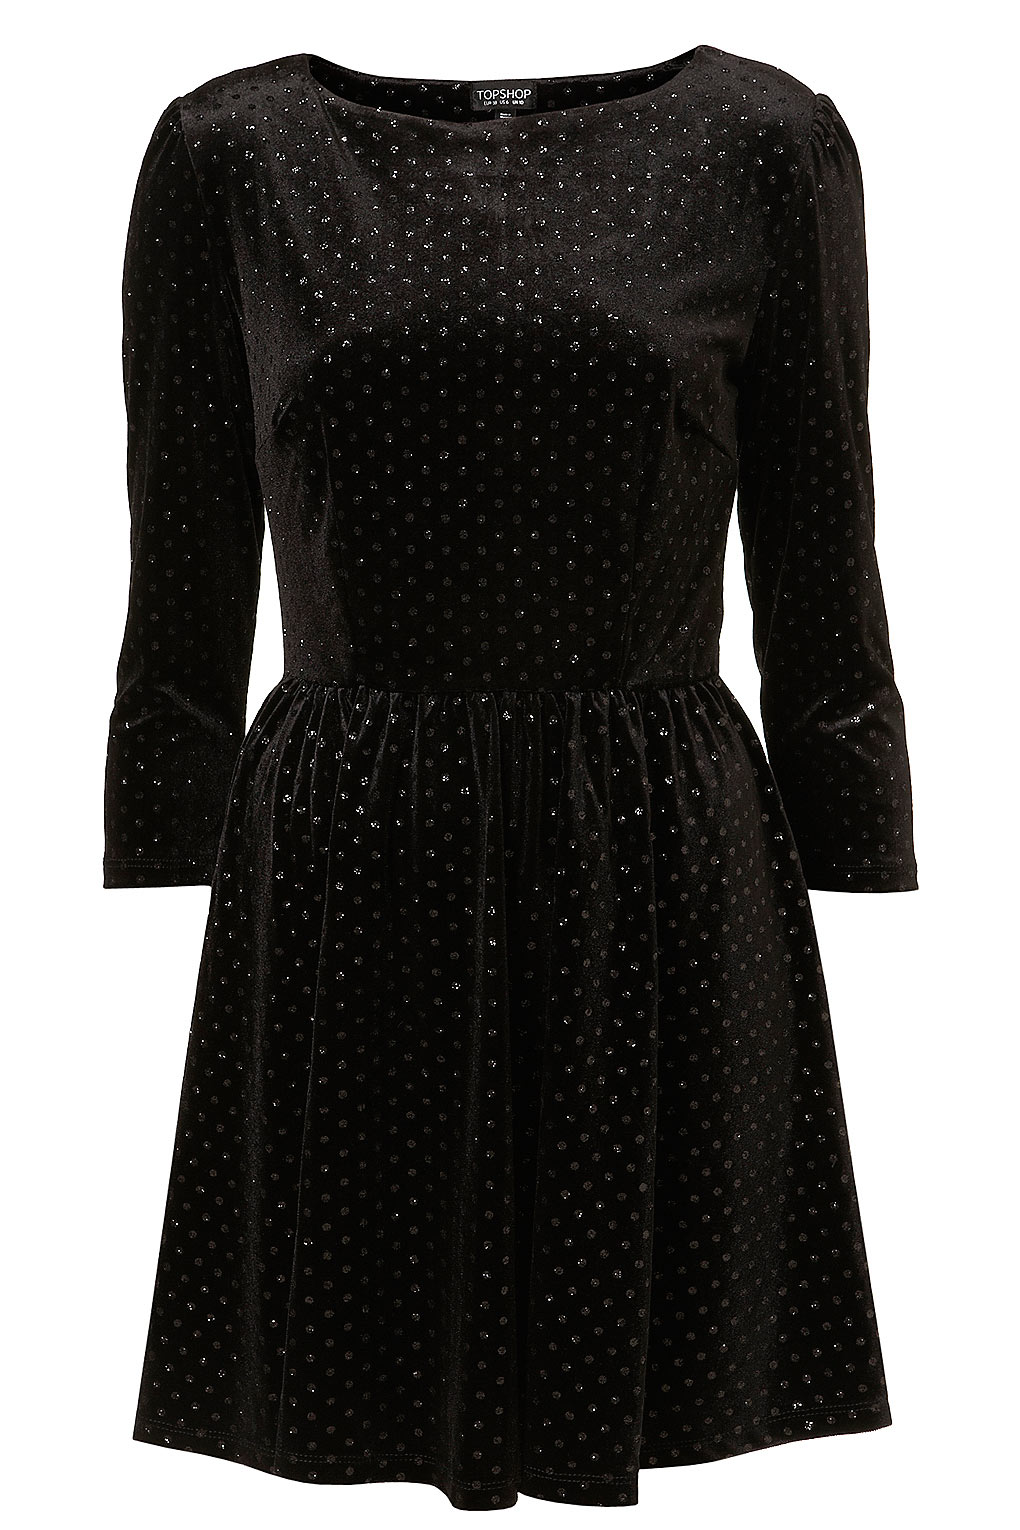 TOPSHOP Glitter Spot Velvet Dress in Black - Lyst